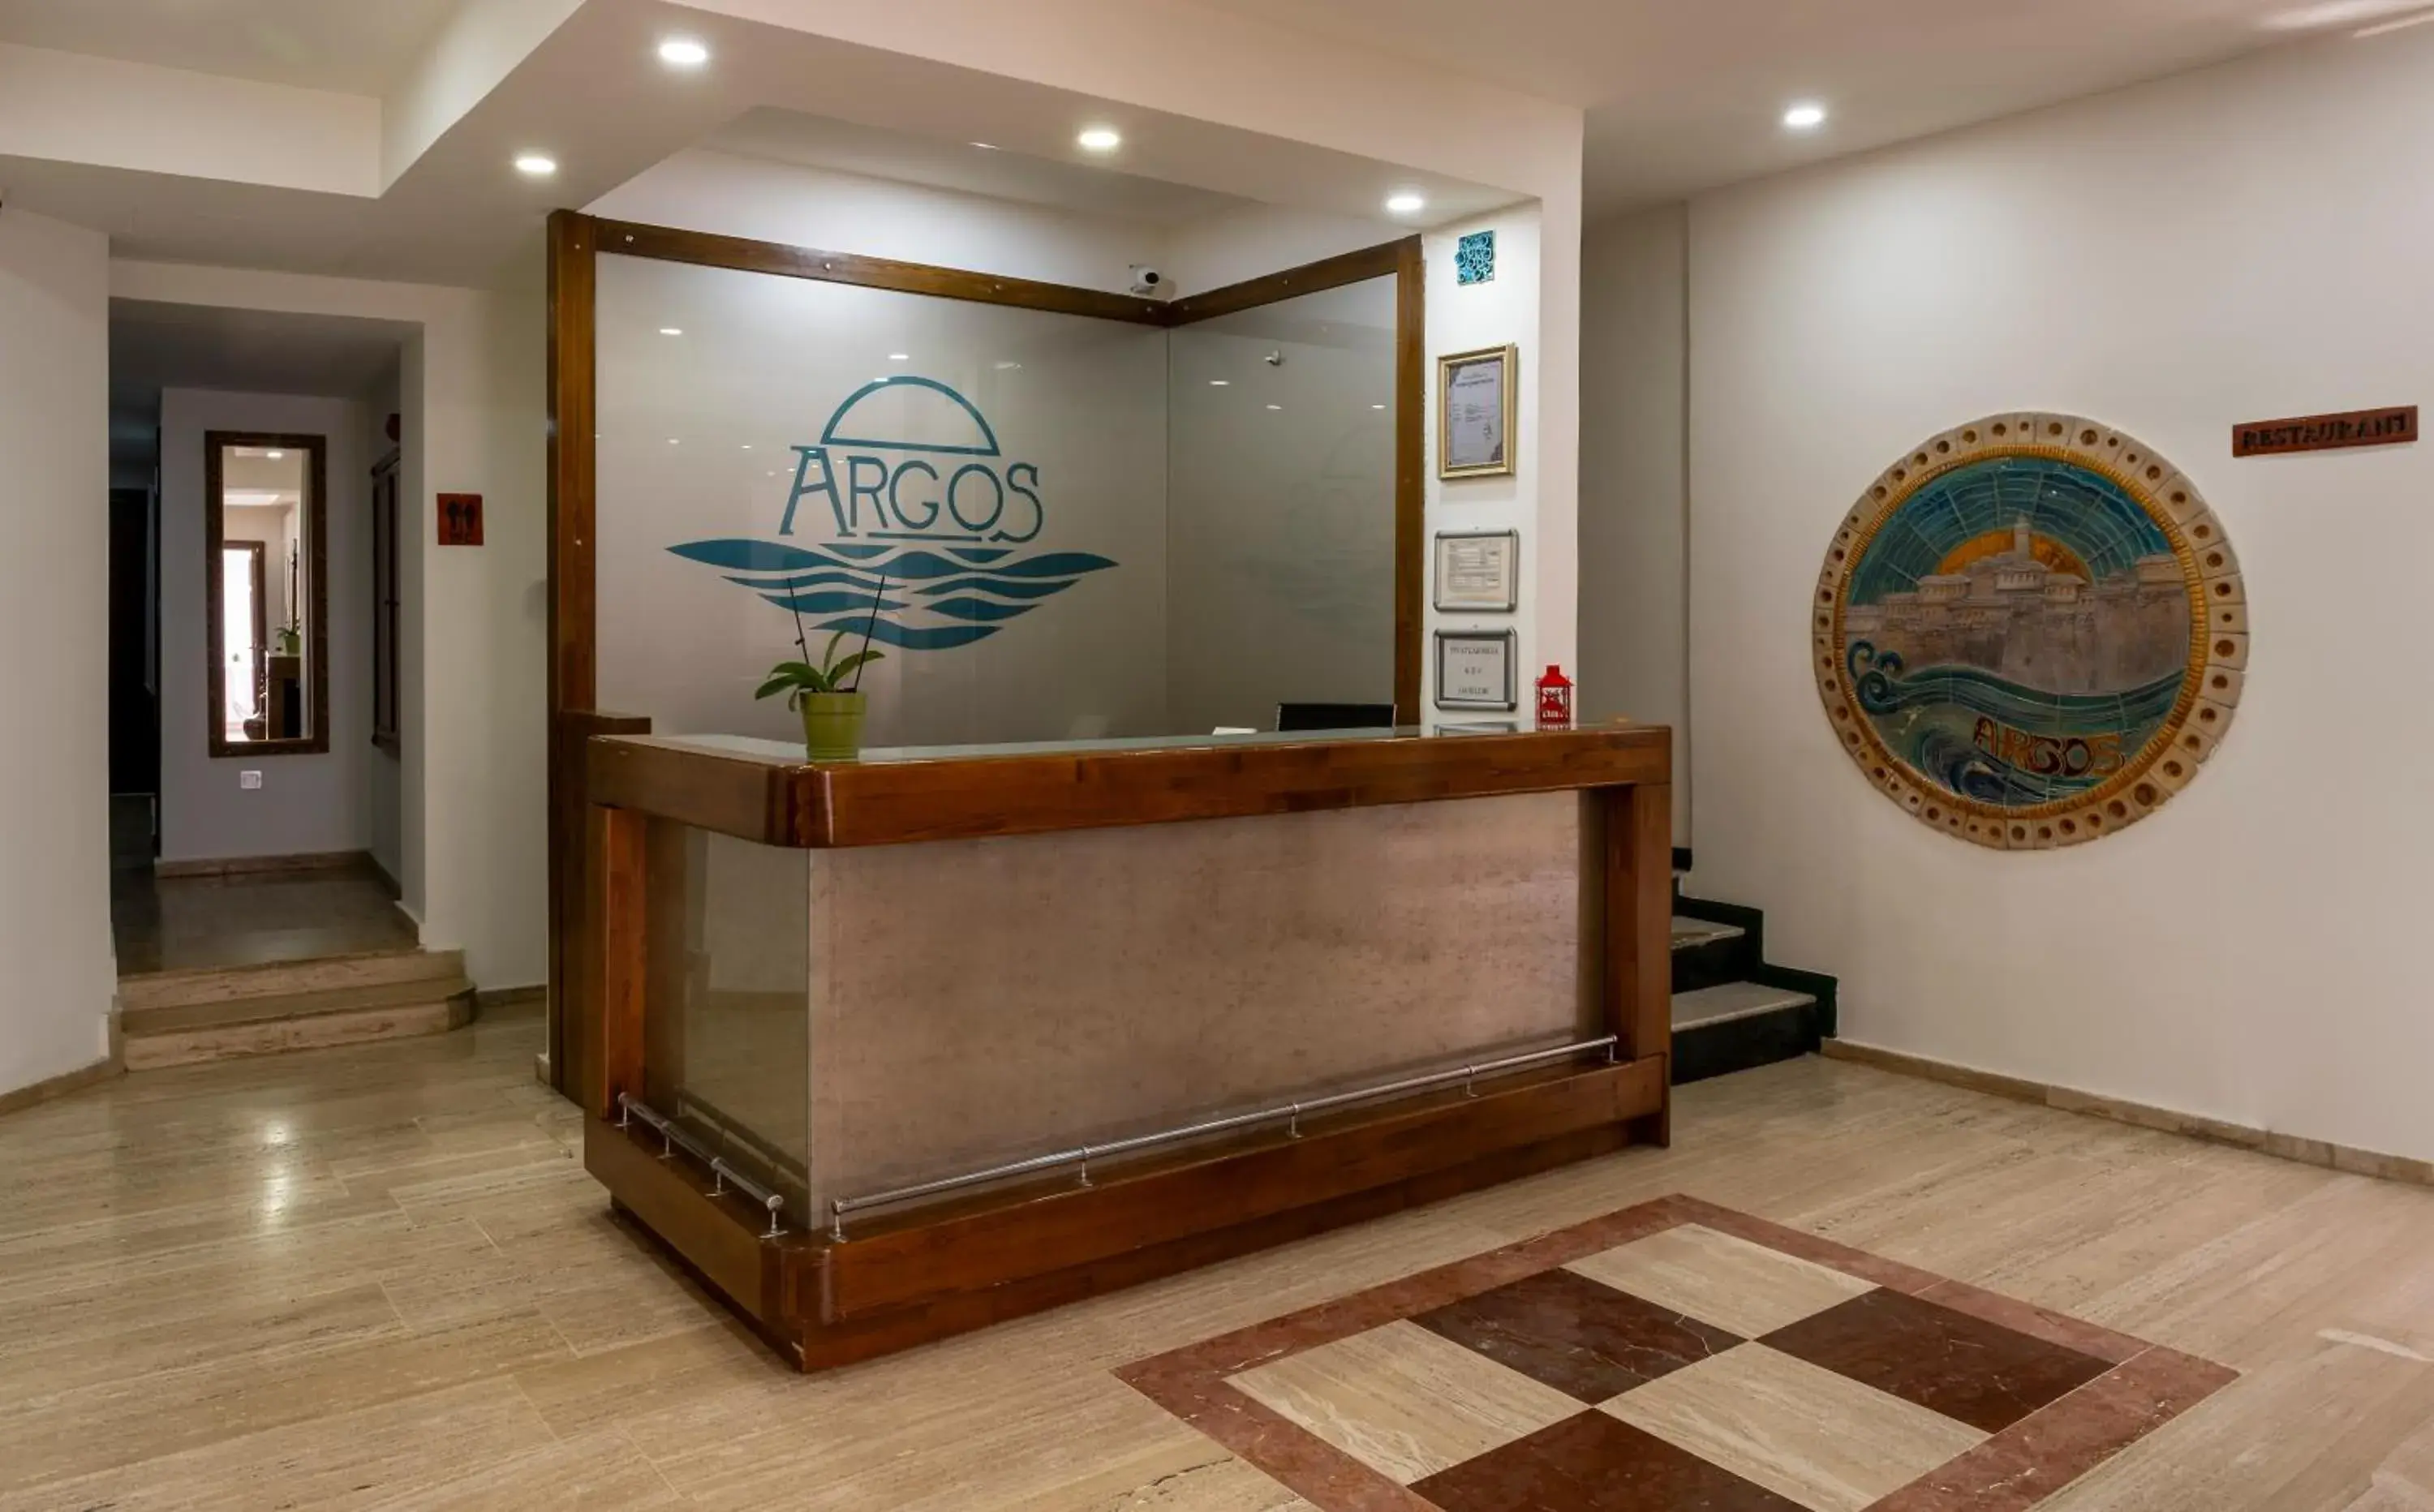 Lobby or reception, Lobby/Reception in Argos Hotel